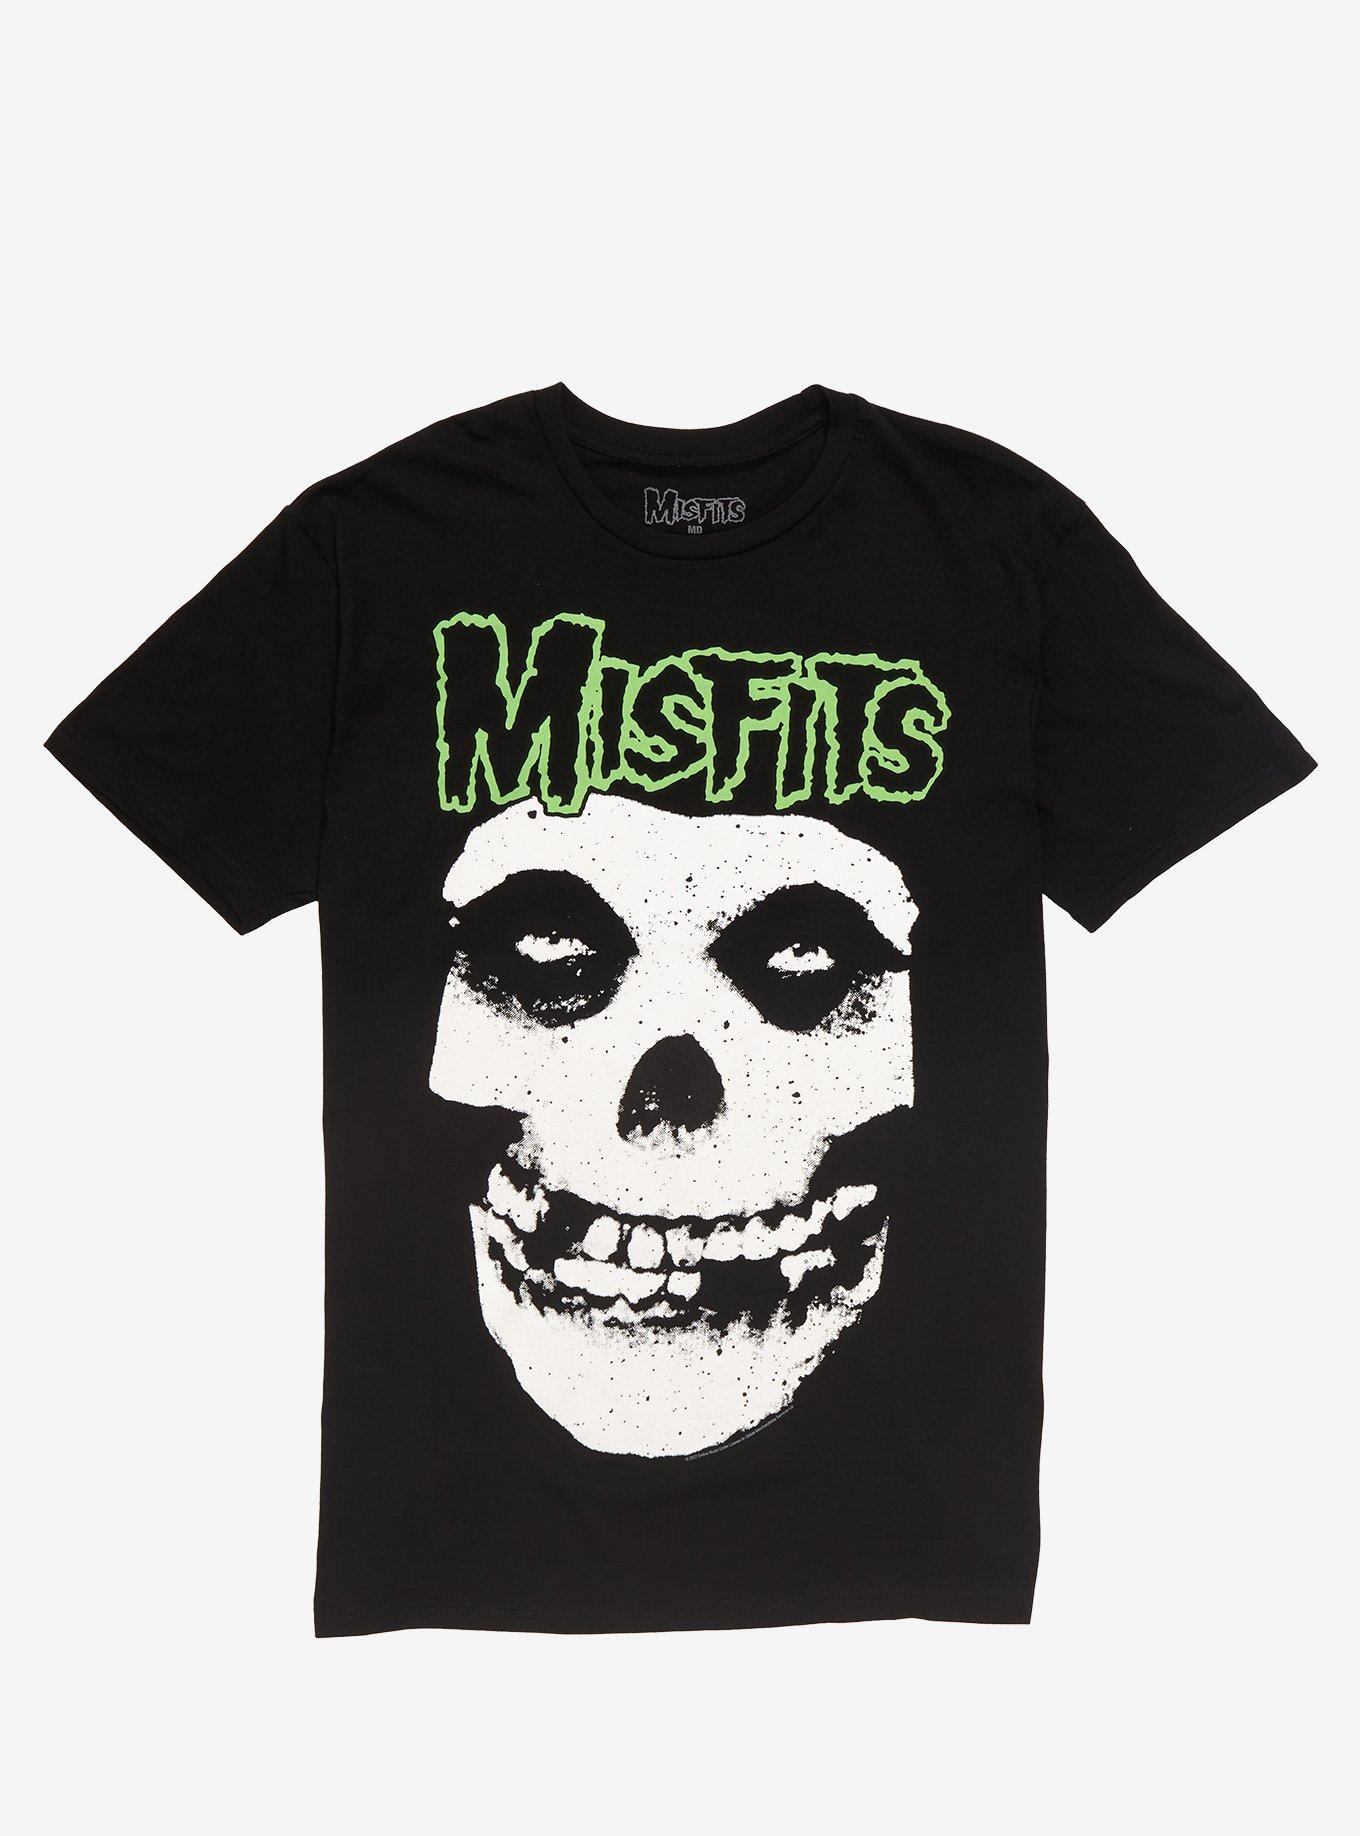 Misfits Fiend Skull T-Shirt | Hot Topic